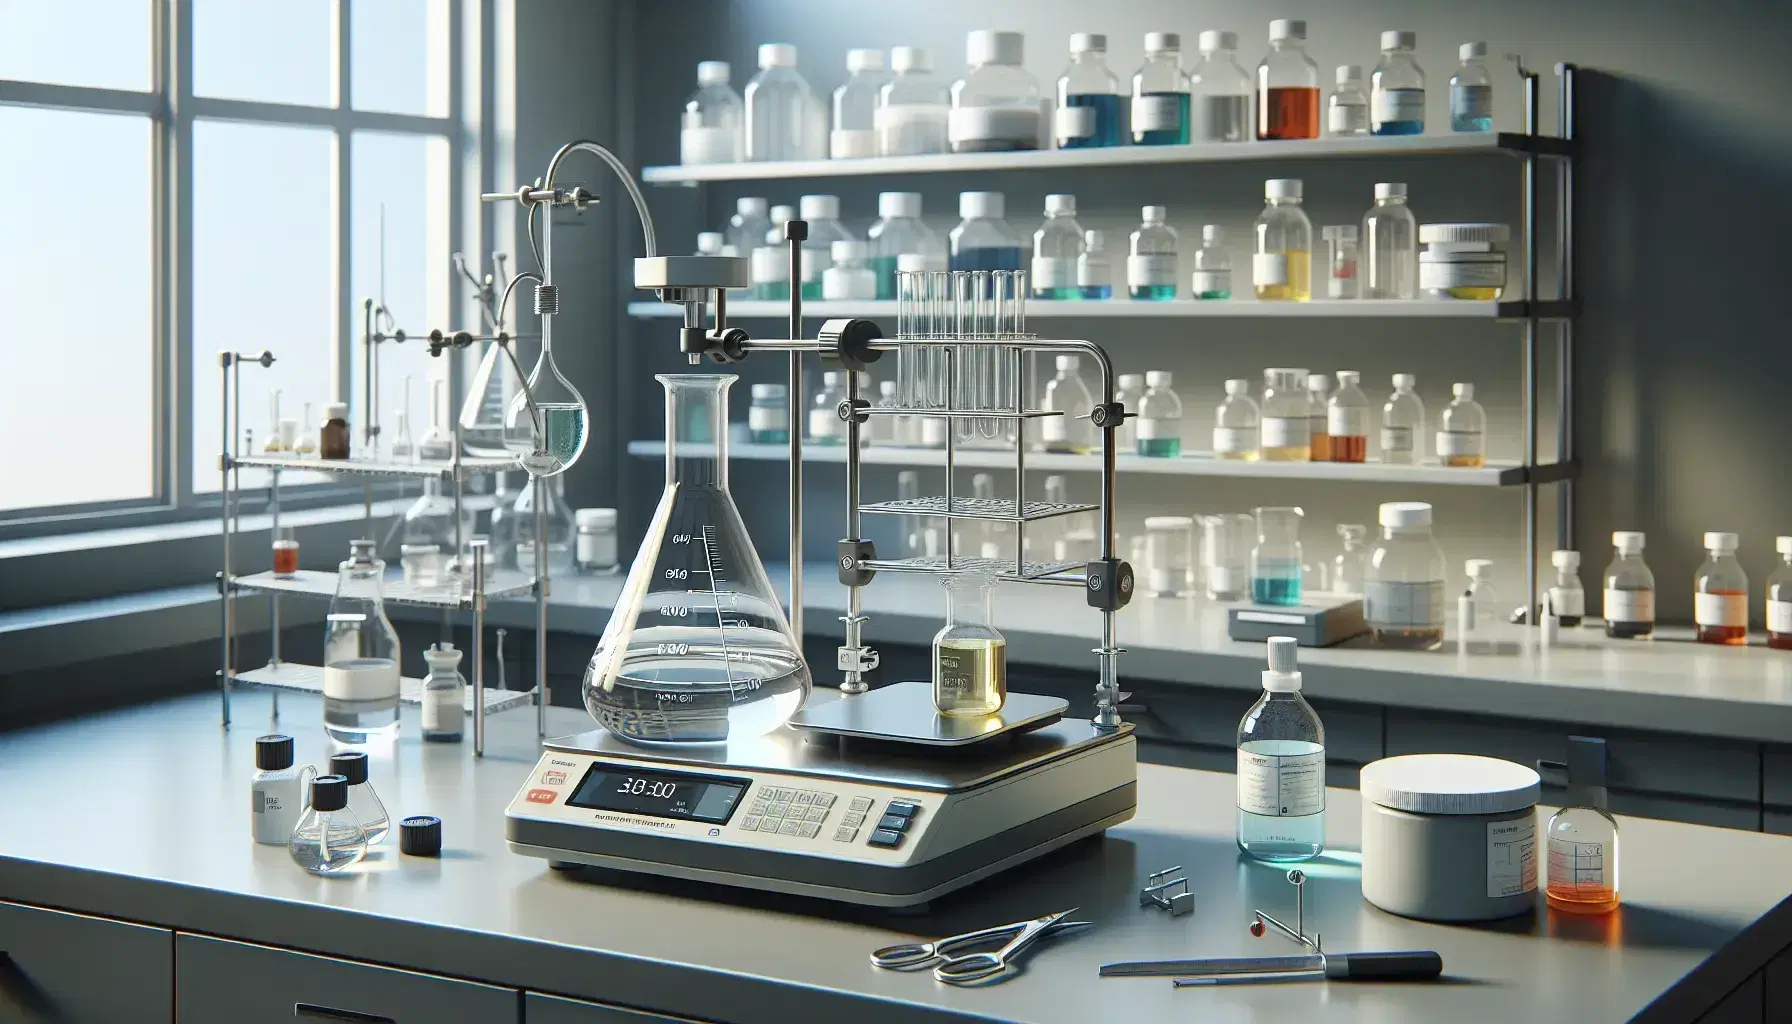 Laboratorio de química con matraz Erlenmeyer y líquido incoloro, pinza sujetando tubo de ensayo con sustancia amarilla, balanza analítica y frascos con líquidos de colores en estante.